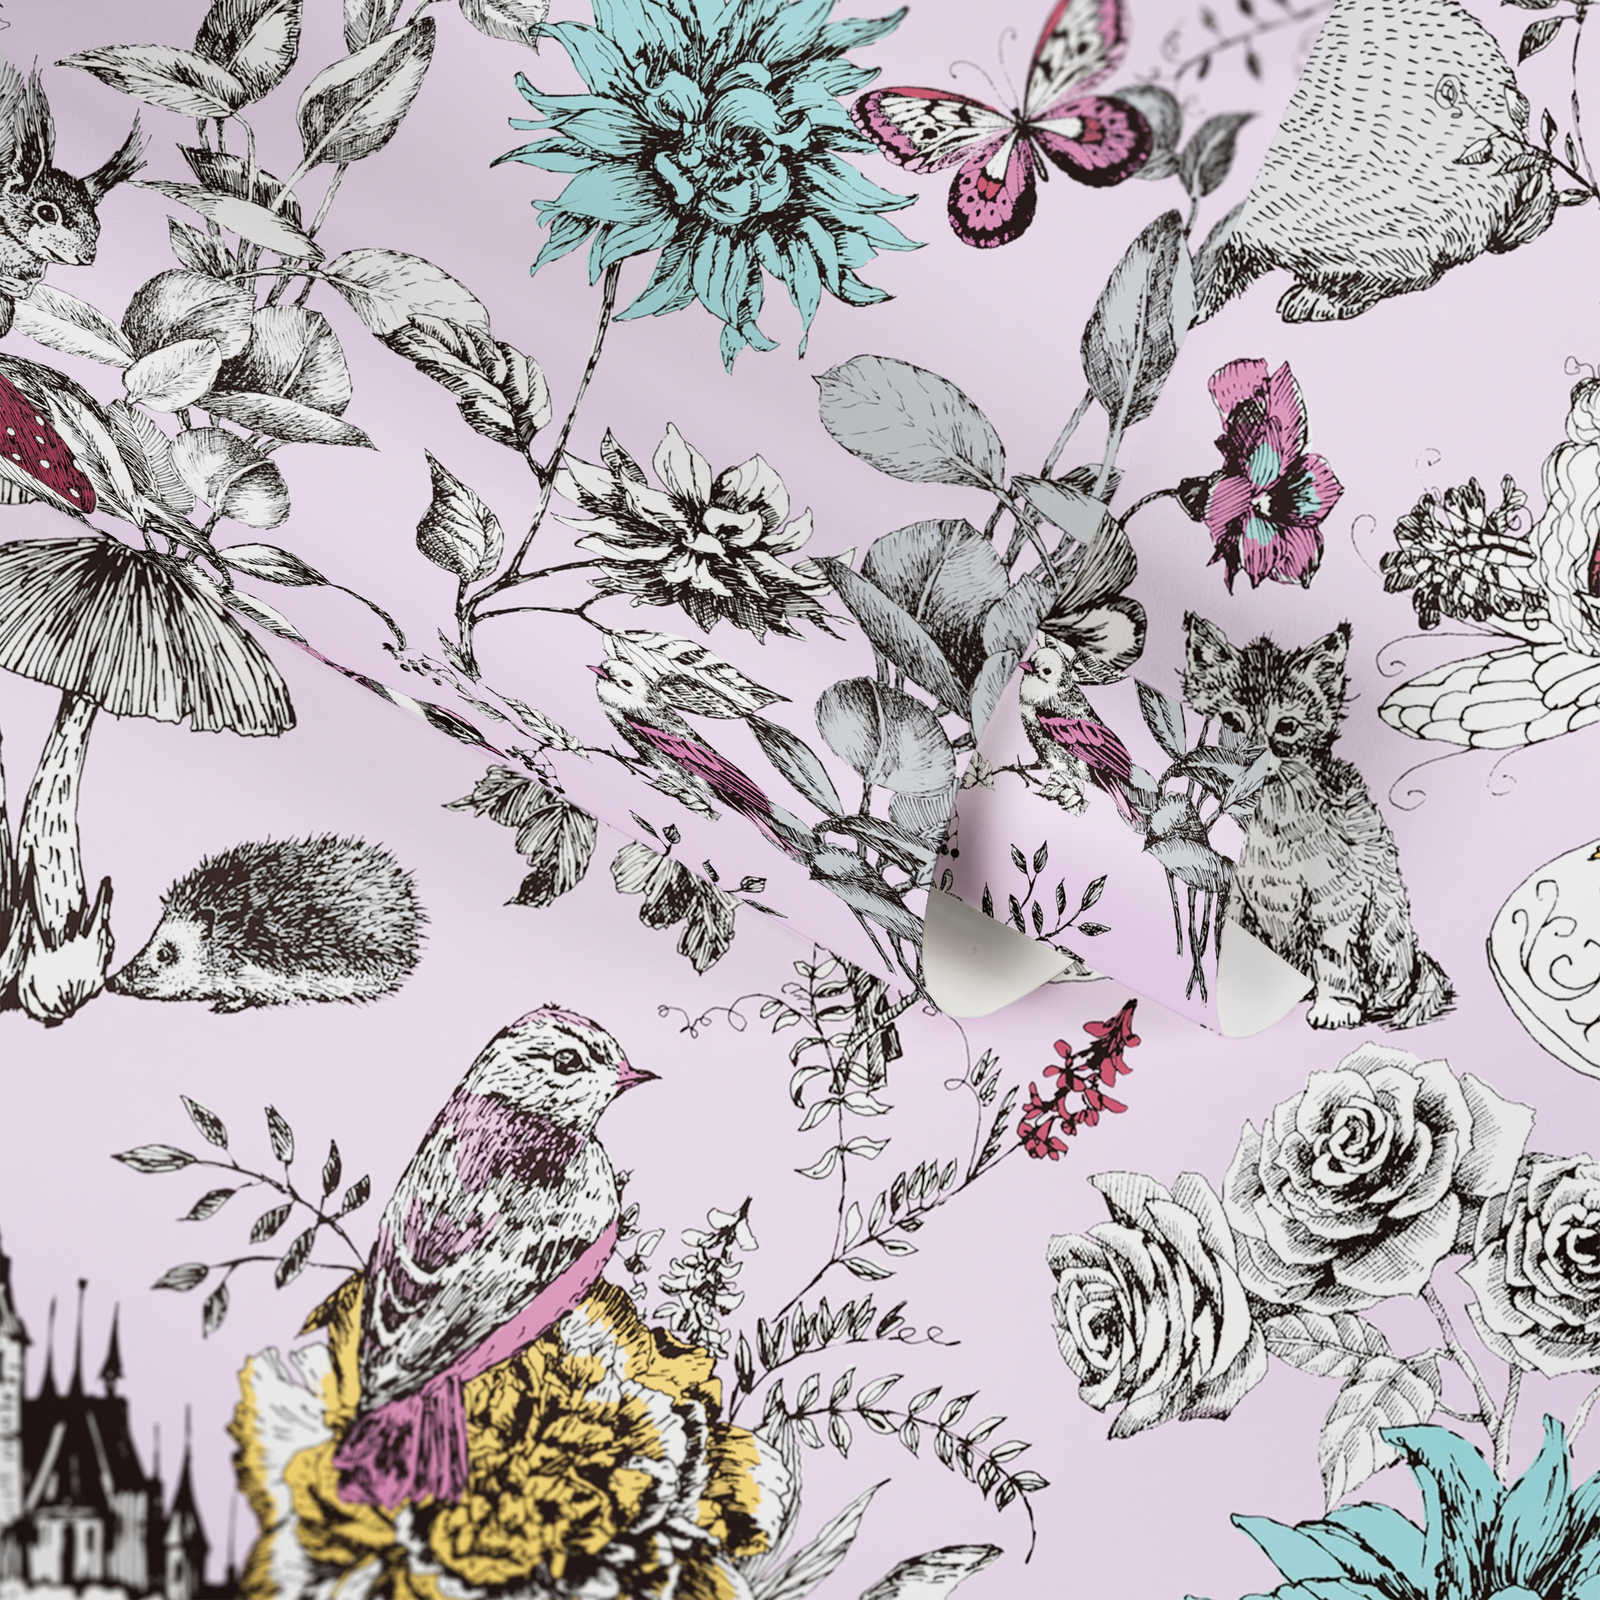             Forest wallpaper nursery fairies & animals - pink, black, white
        